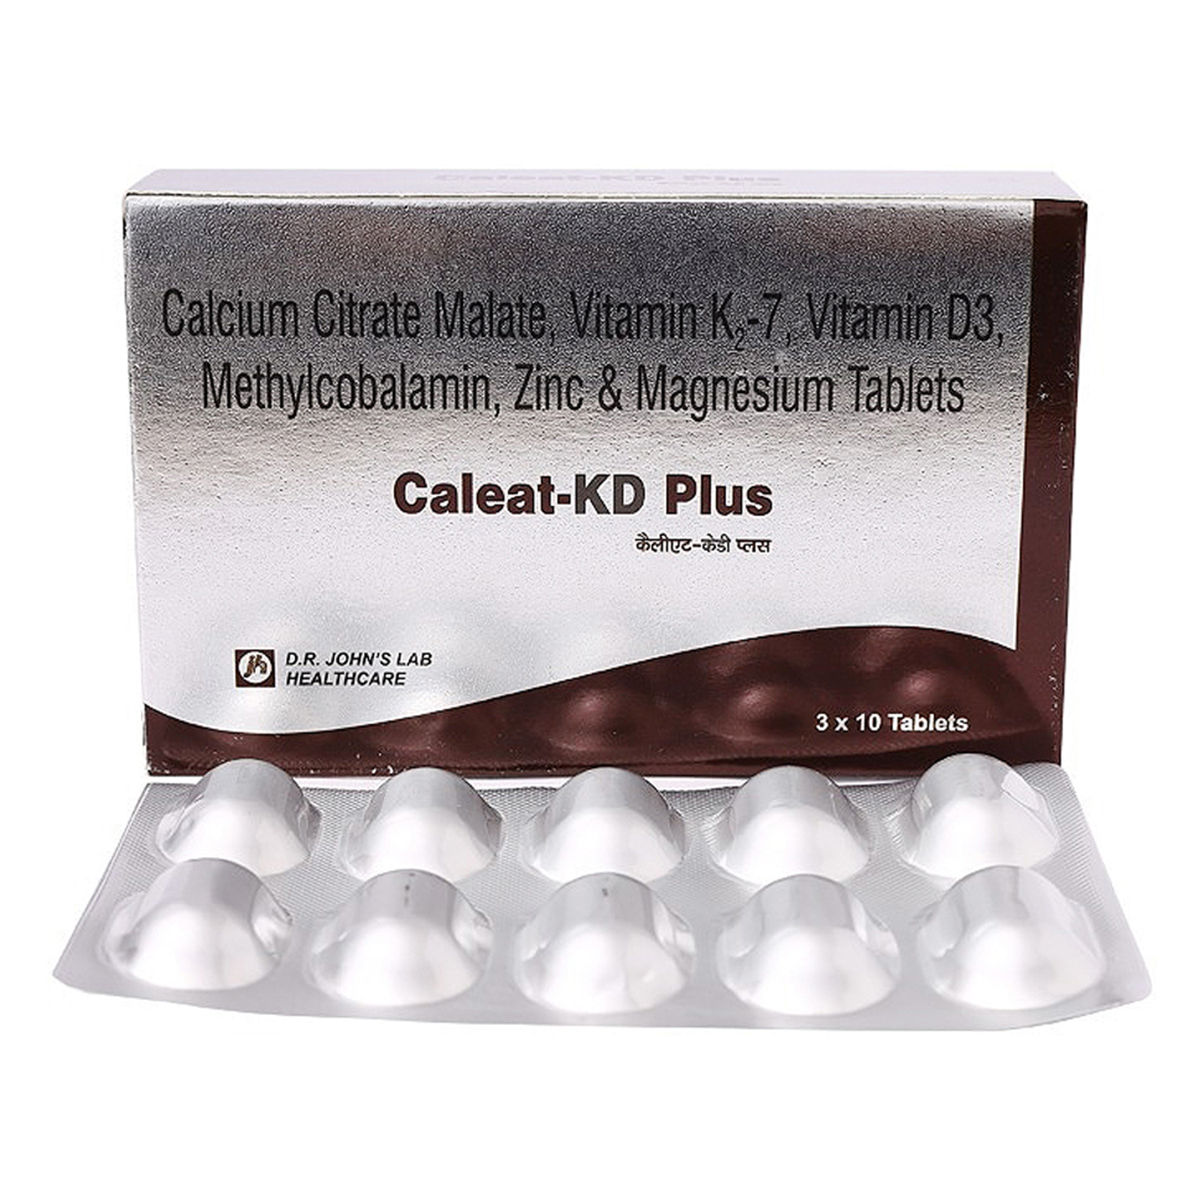 Buy Caleat-KD Plus Tablet 10's Online